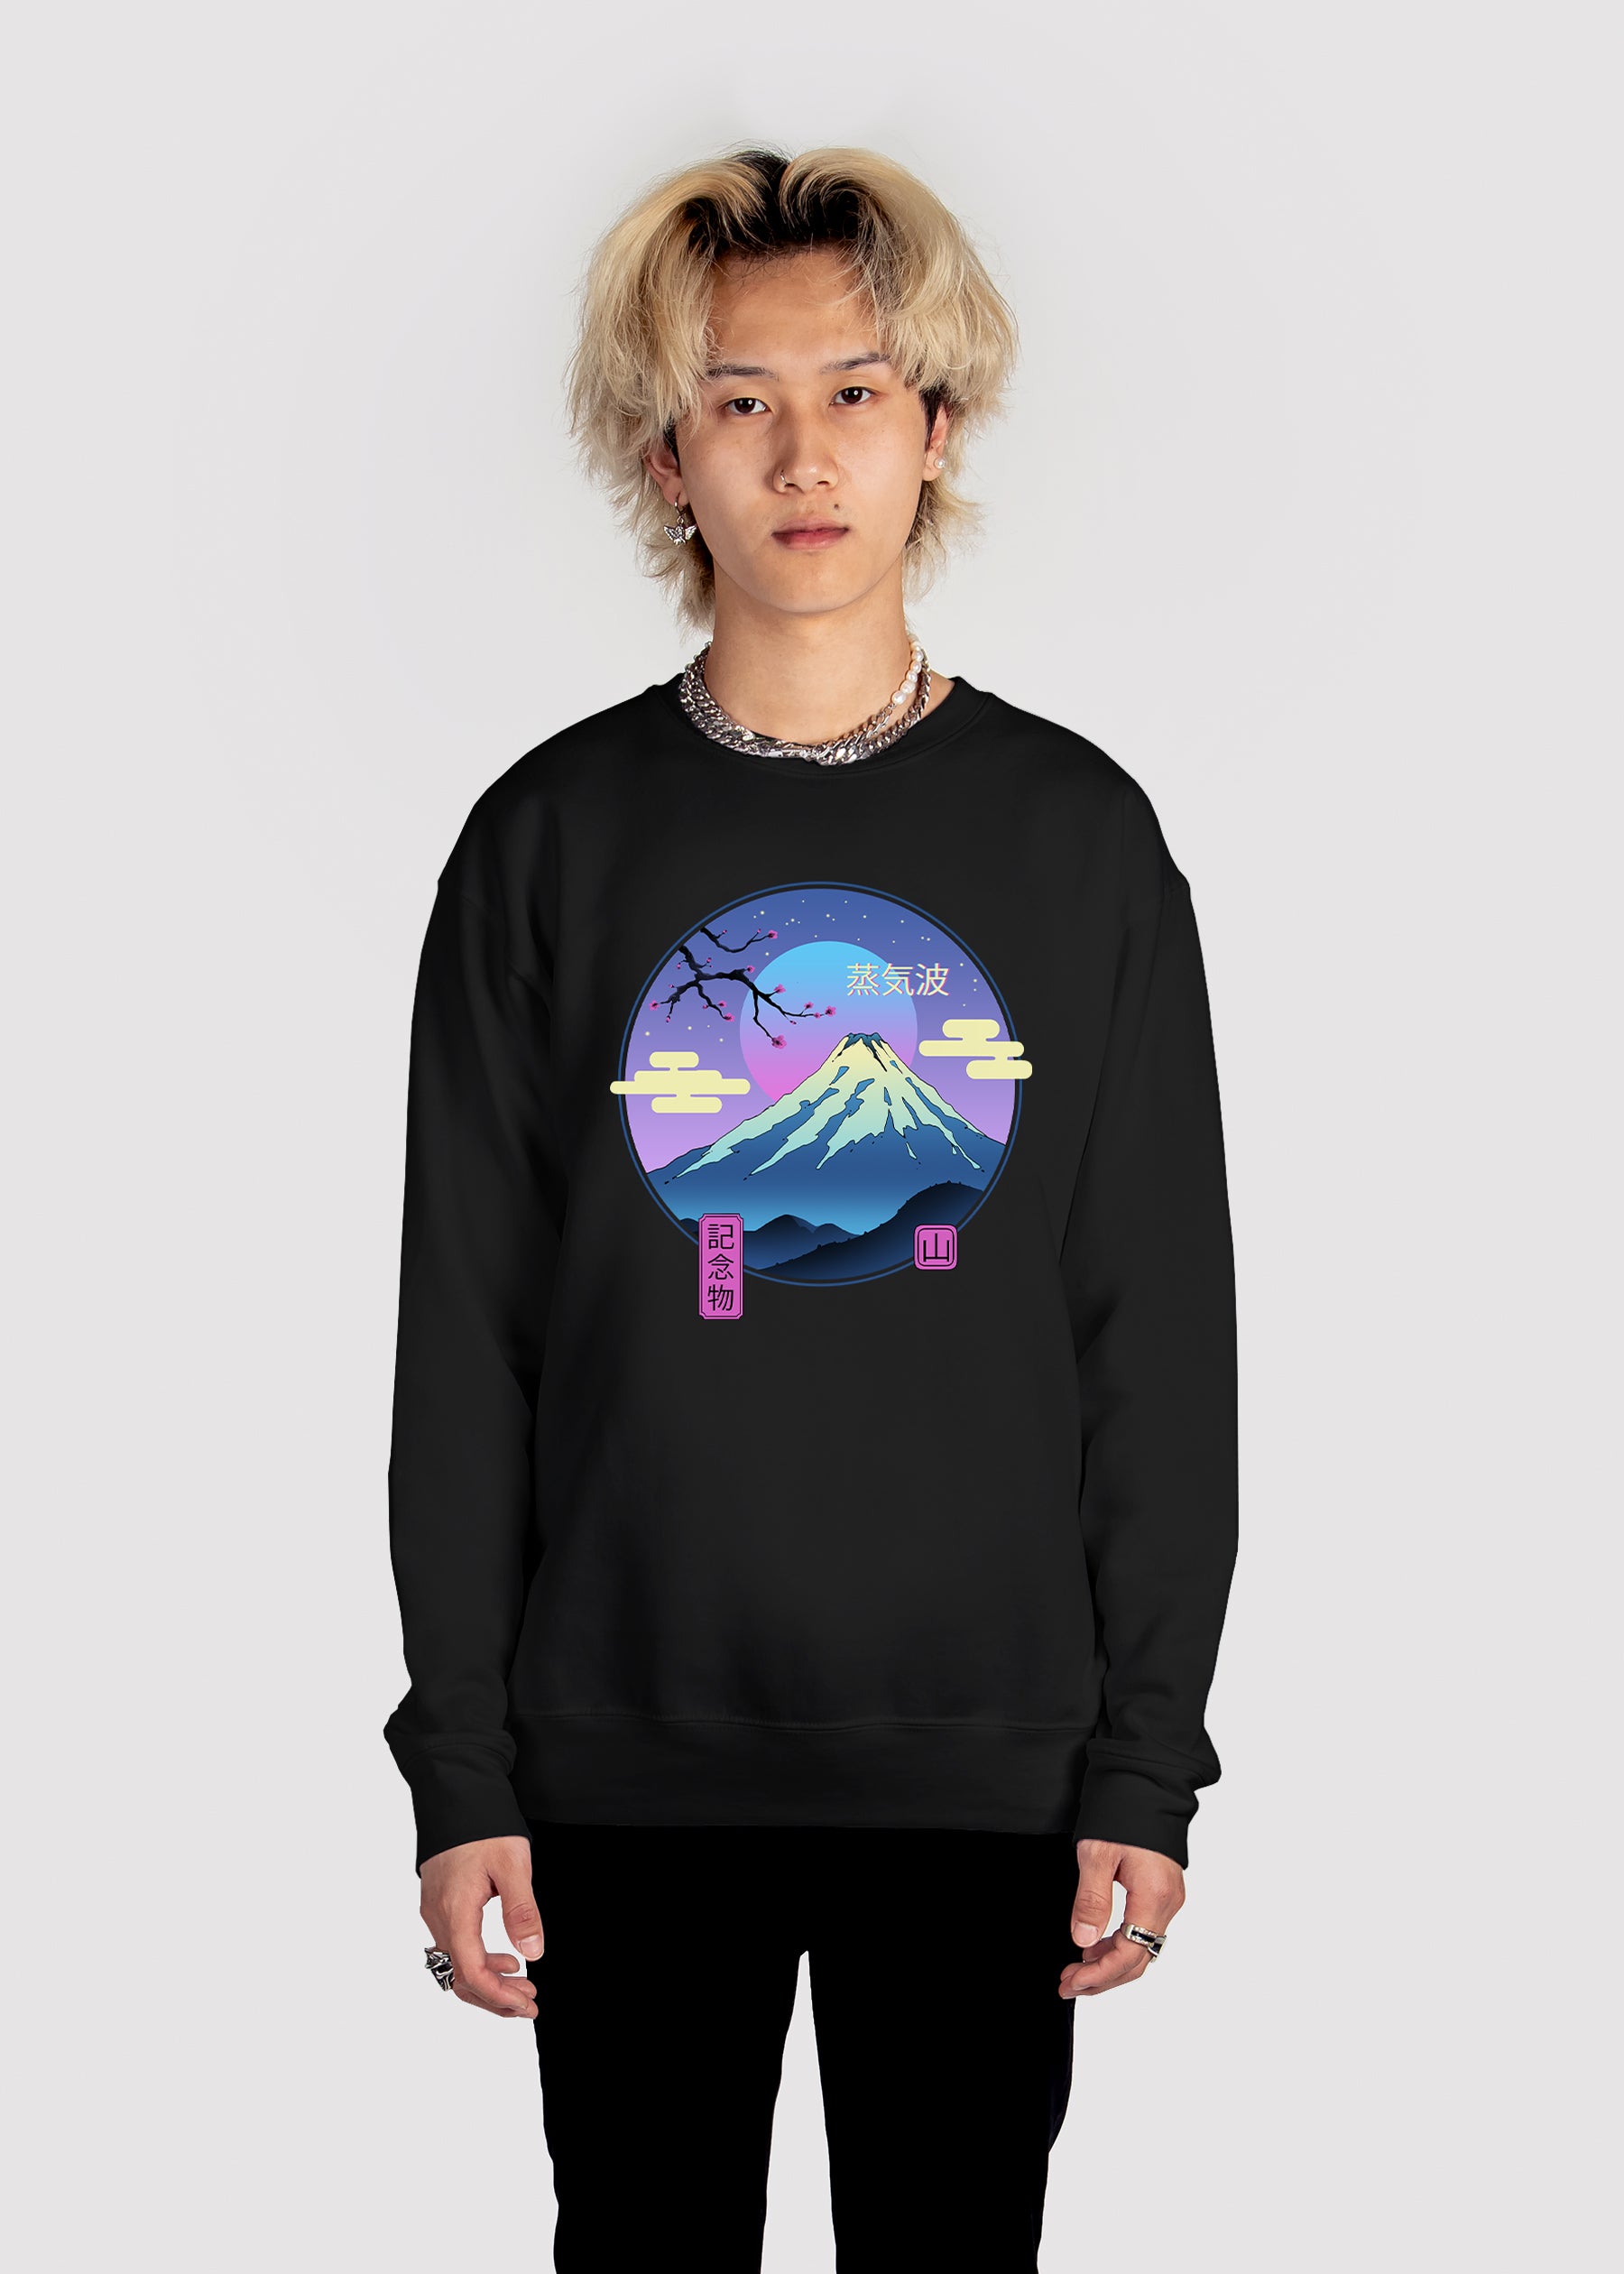 Fuji Rising Sweatshirt